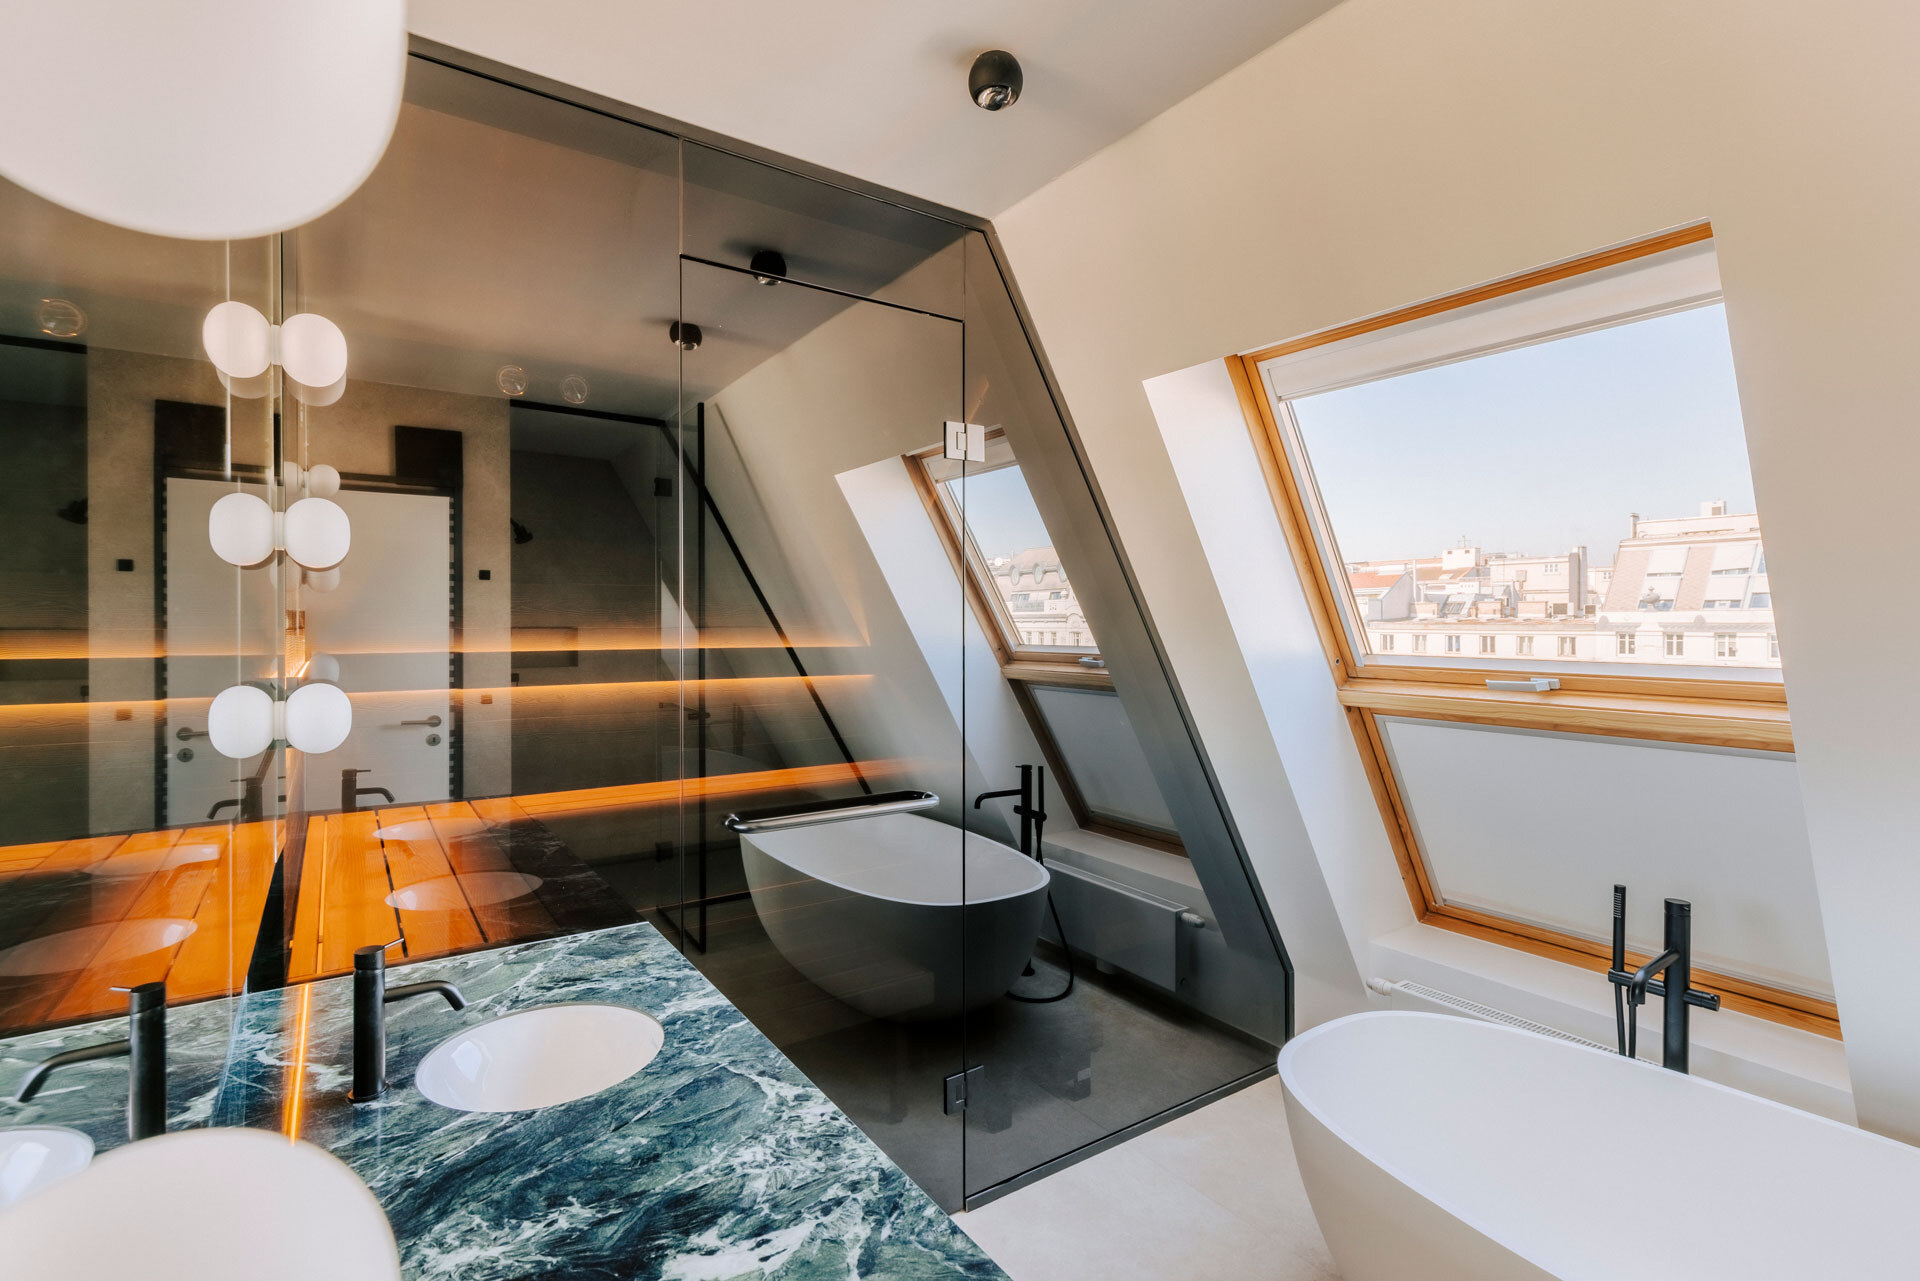 Dunkel verglaste Design-Sauna aus Thermofichte mit anschließendem Marmorwaschtisch und freistehender Badewanne in einem luxuriösen Bad einer Wiener Dachgeschosswohnung.